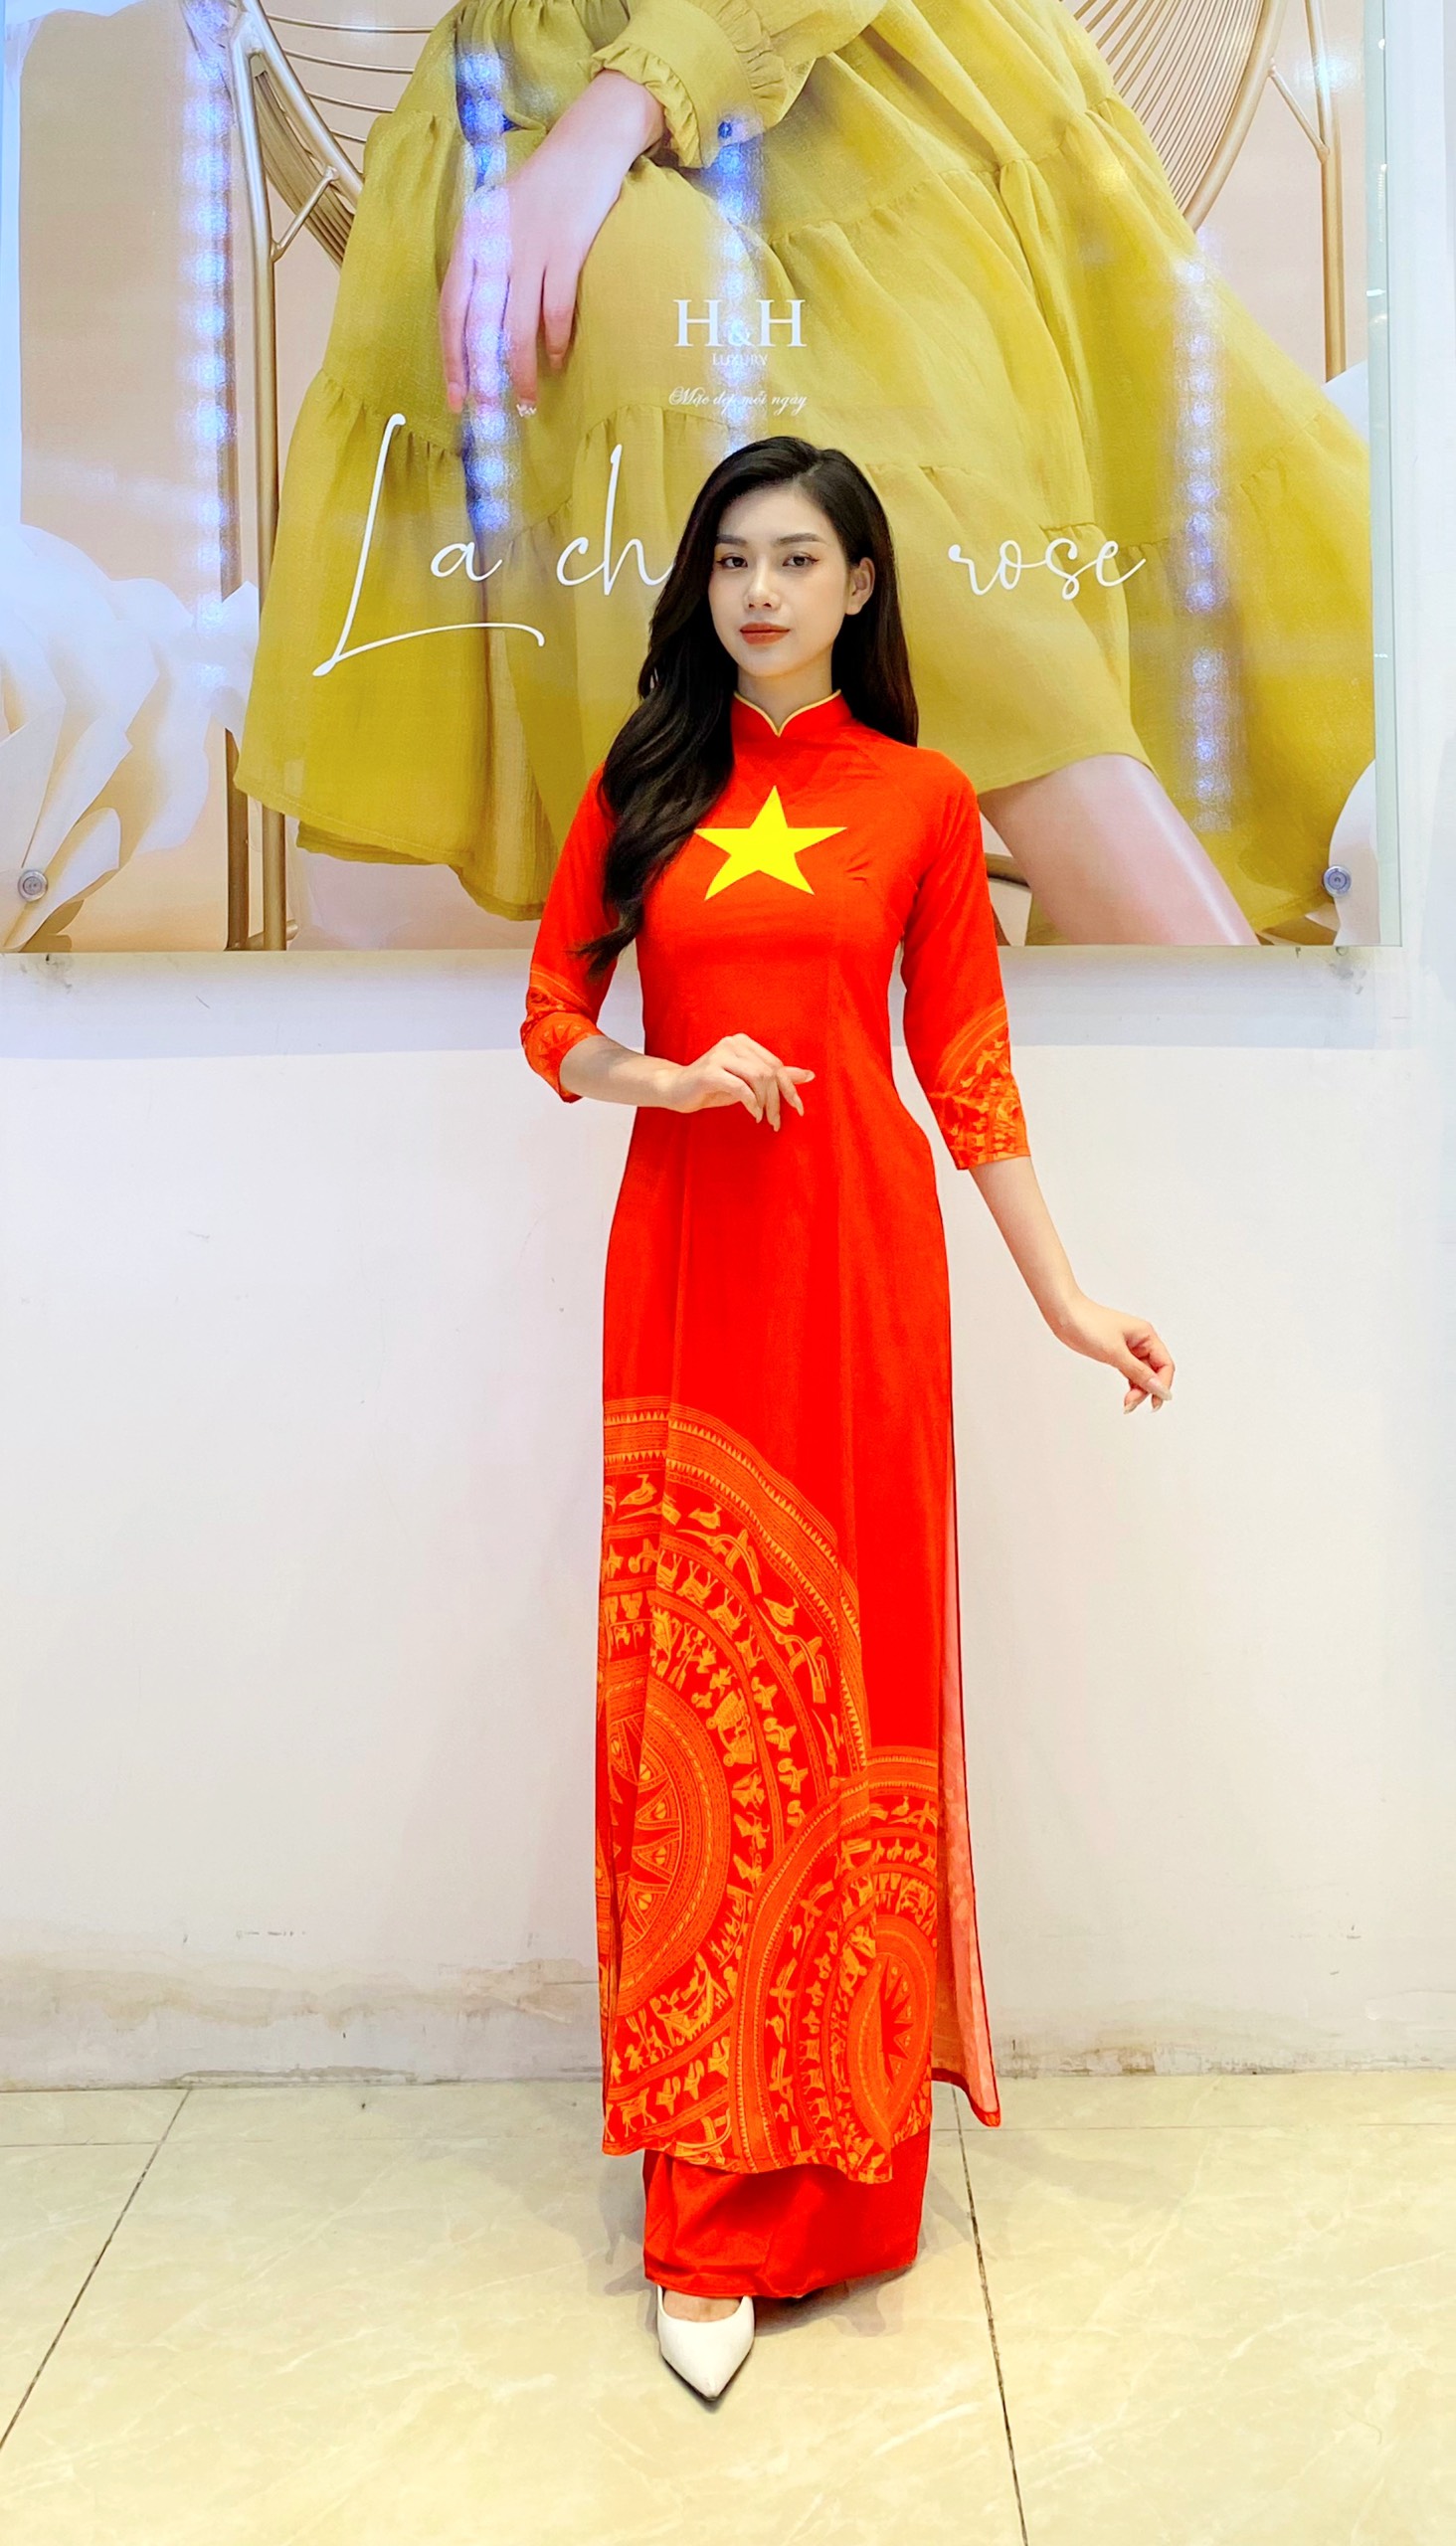 Áo dài lụa cờ đỏ sao vàng với cổ viền vàng là trang phục truyền thống đại diện cho tình yêu nước của người Việt. Chúng tôi cung cấp áo dài lụa cờ đỏ sao vàng với chất liệu cao cấp, thêu tay tinh xảo đến từng chi tiết. Đảm bảo sẽ khiến khách hàng hài lòng với sản phẩm của chúng tôi.